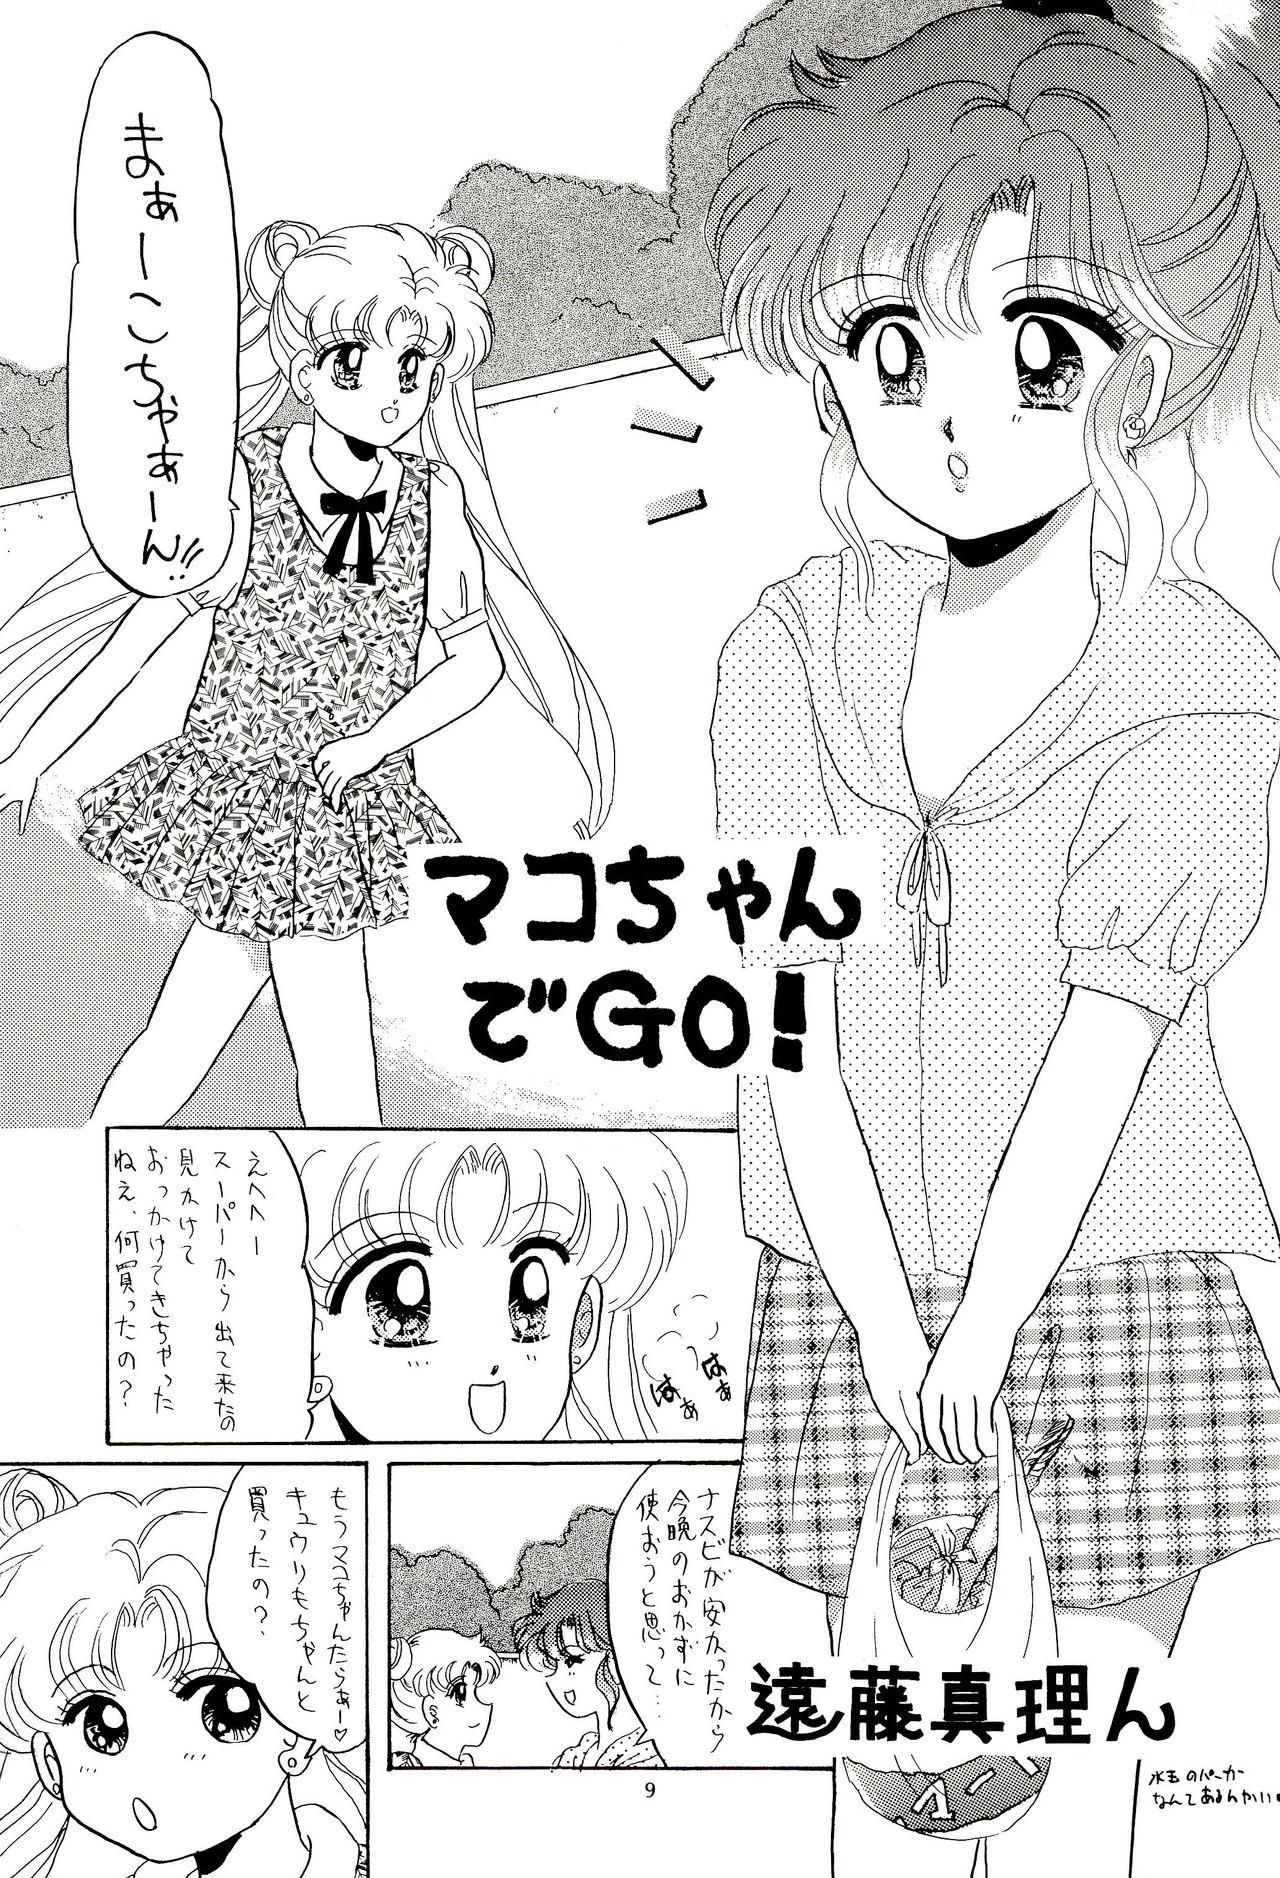 Straight Porn Tsuki no Ura no Labyrinth - Sailor moon Dancing - Page 9